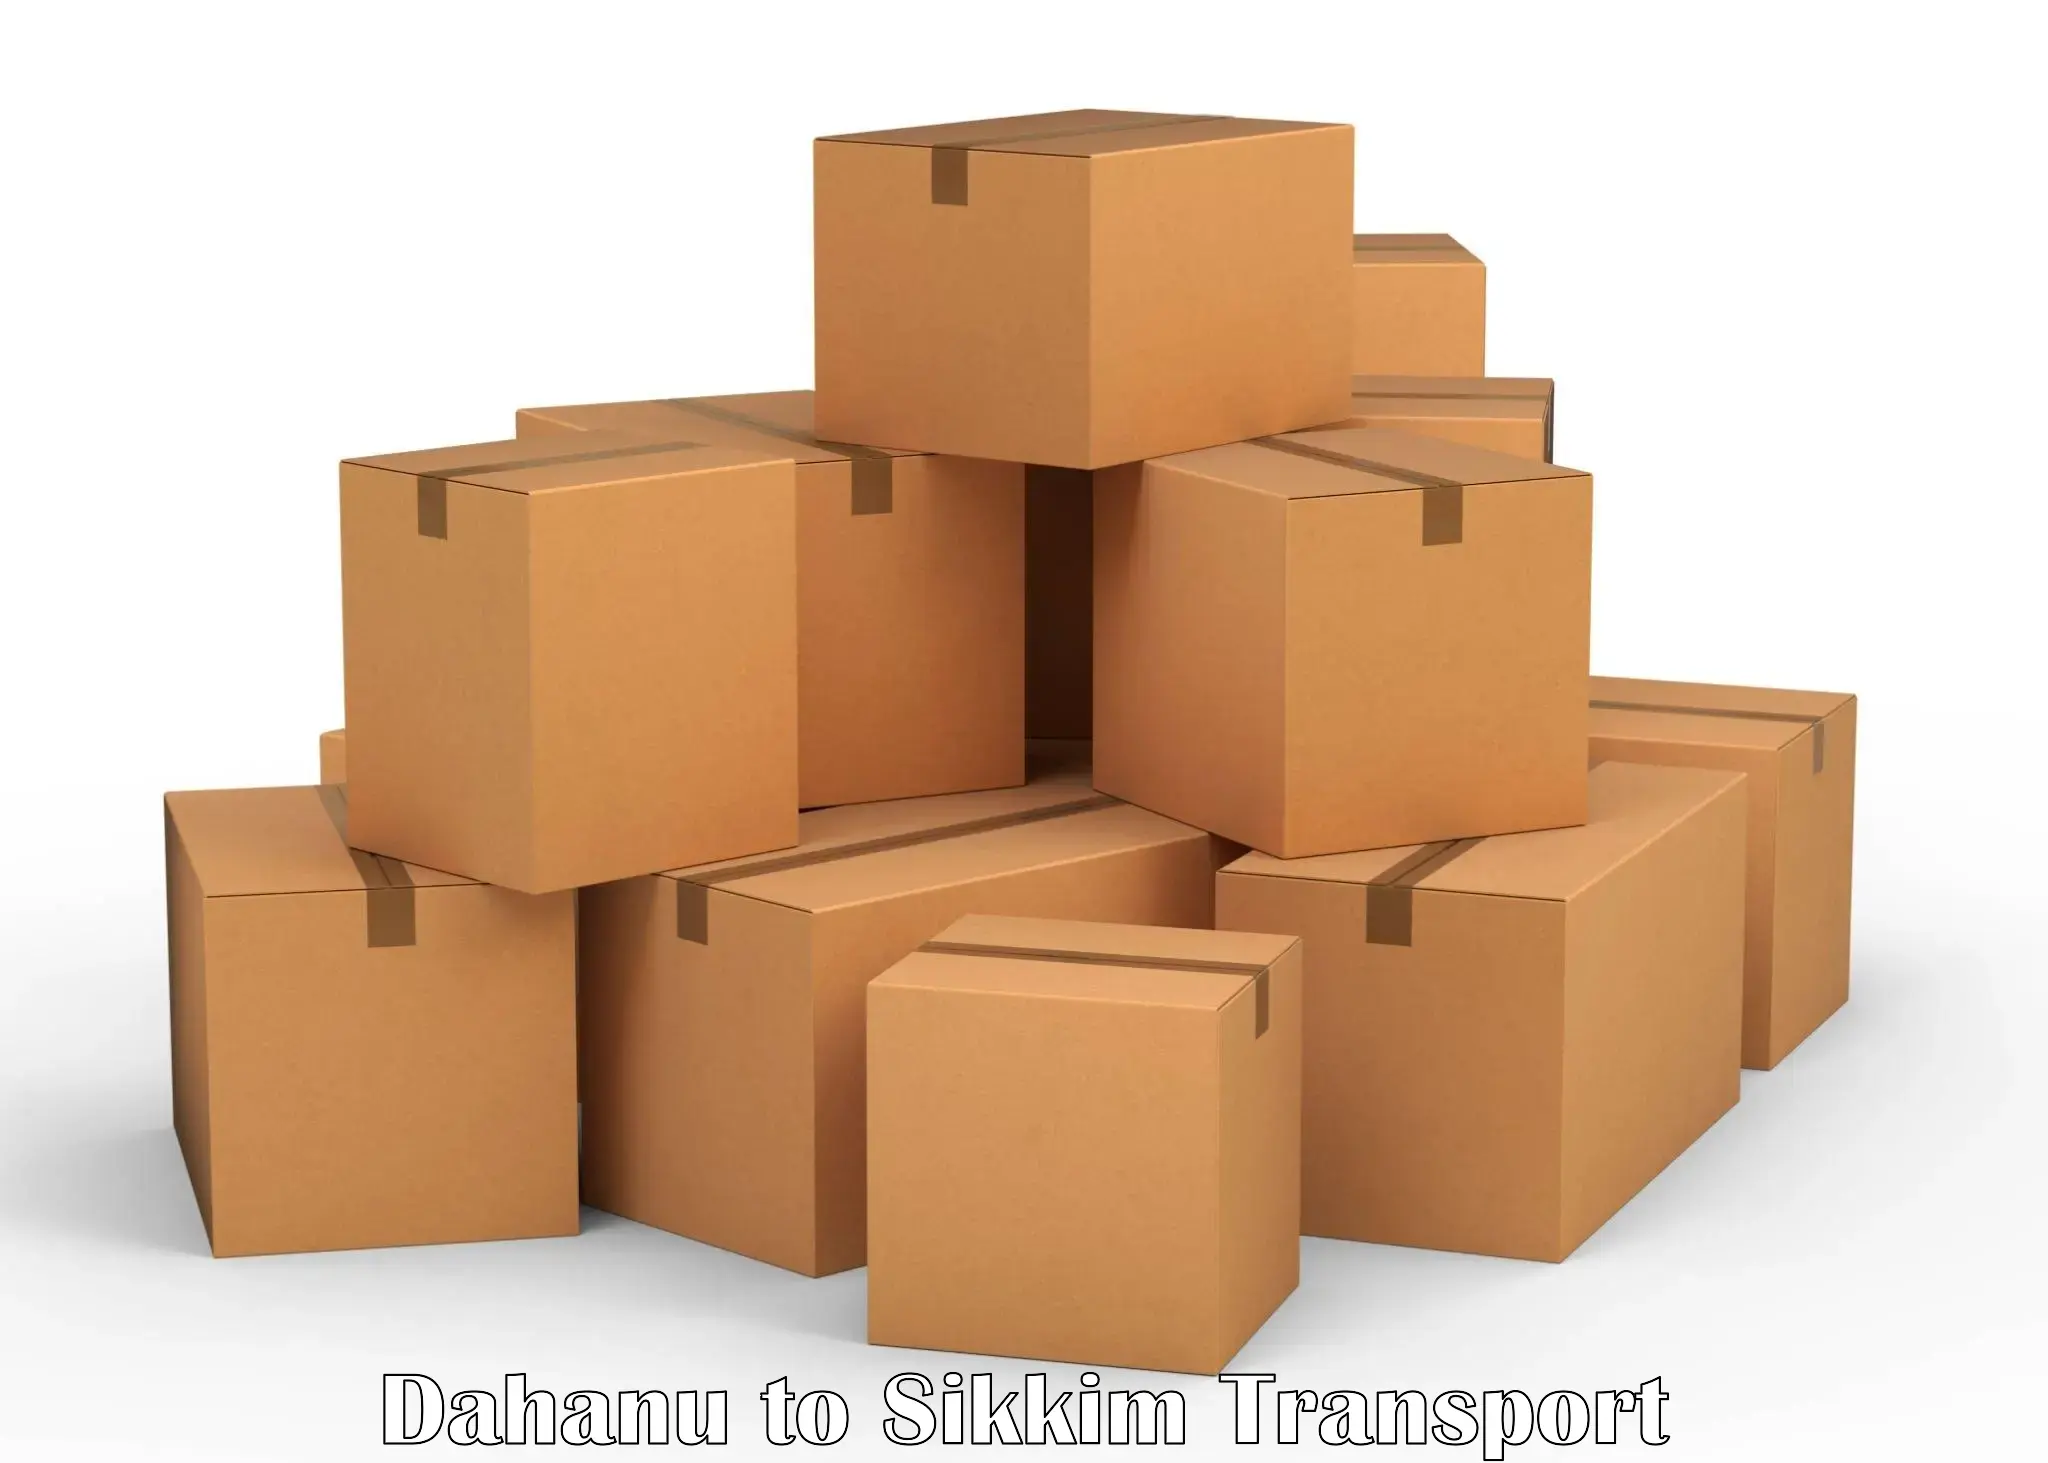 India truck logistics services Dahanu to Geyzing